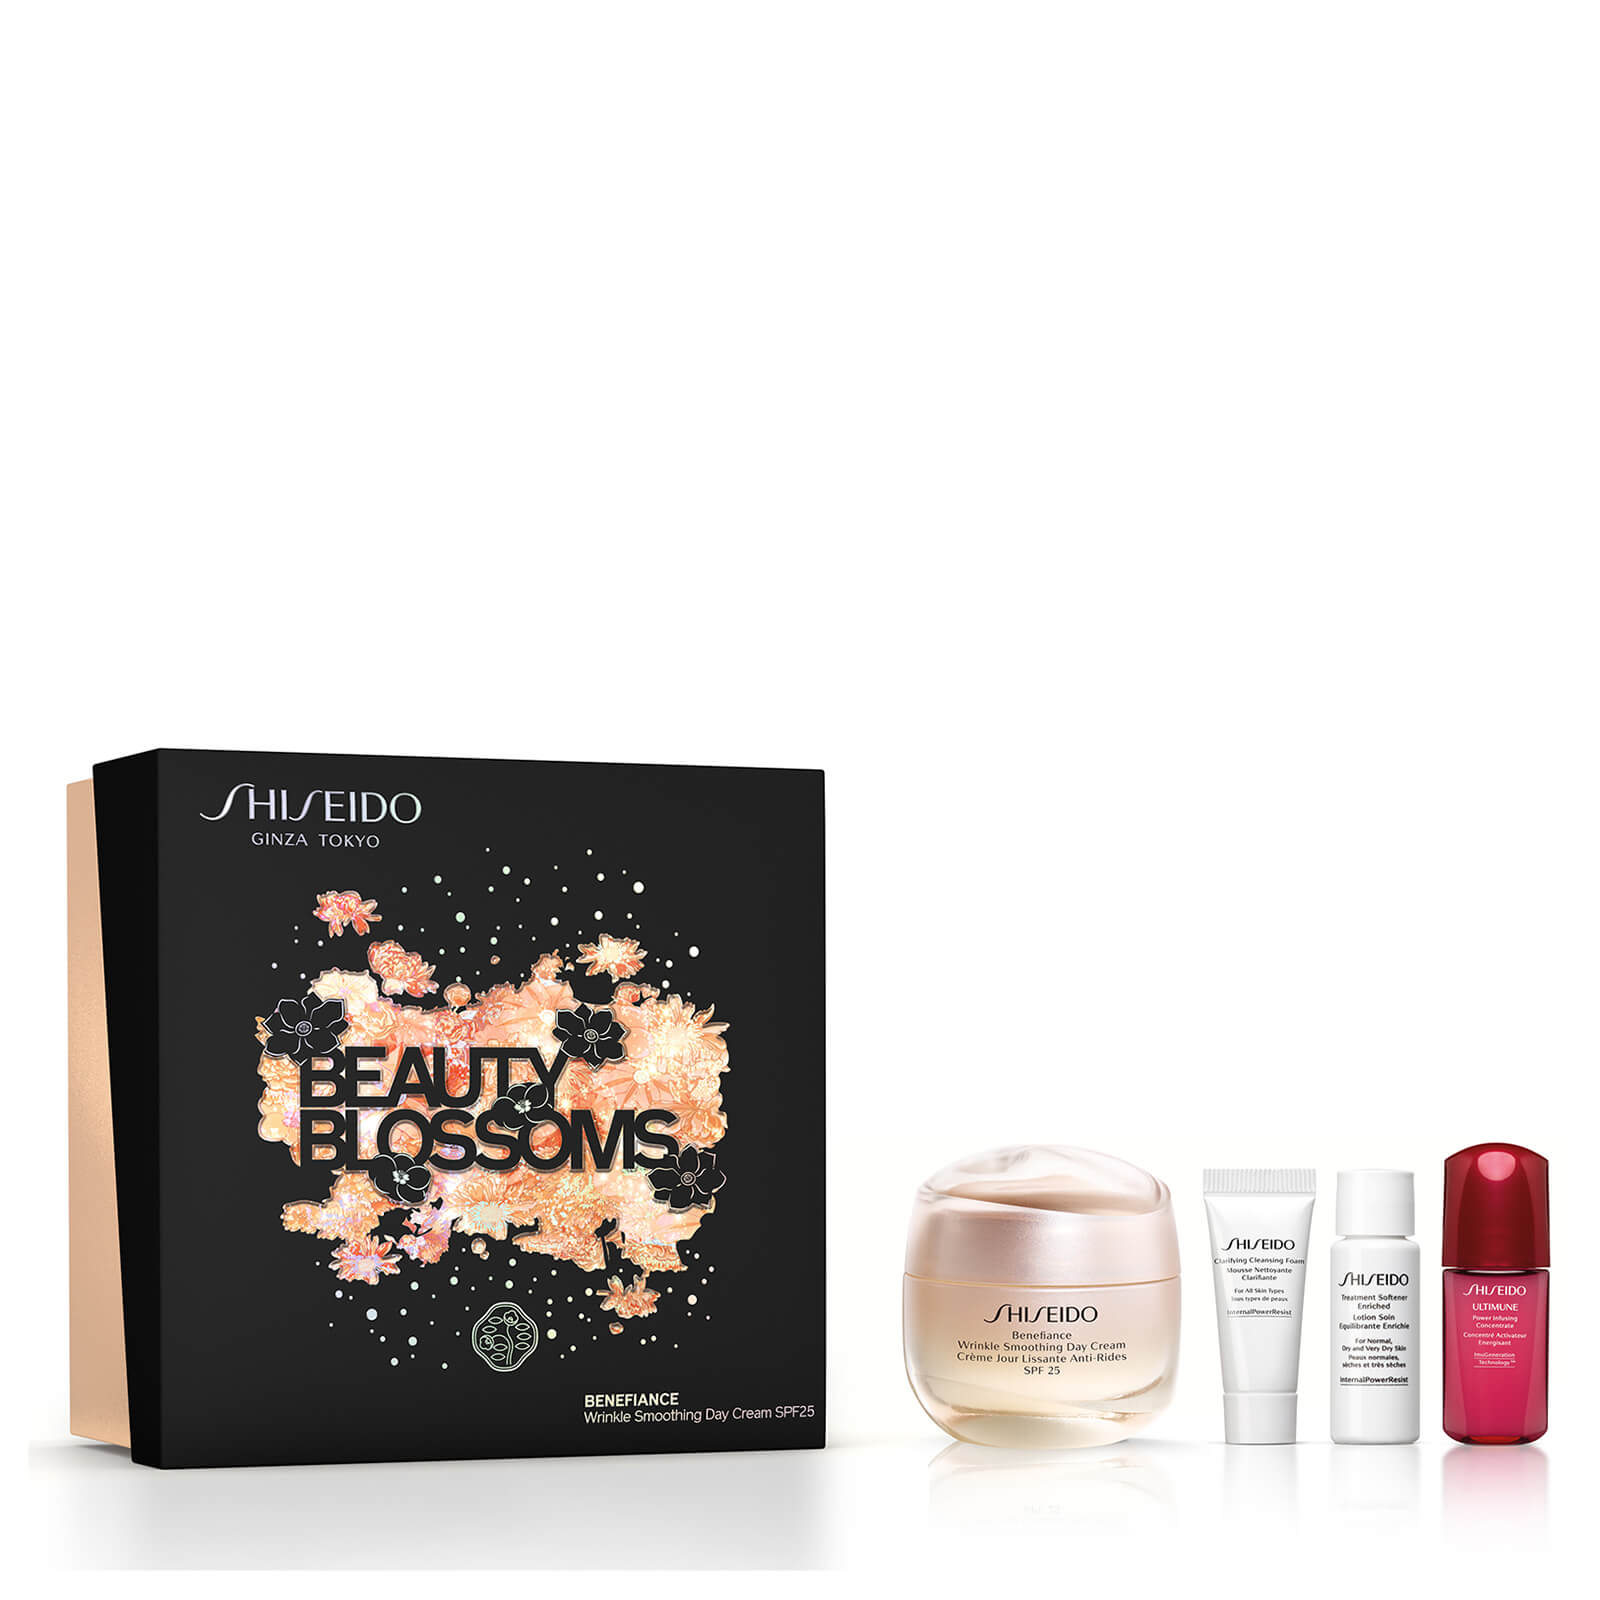 Shiseido Benefiance Wrinkle Smoothing Day Cream SPF25 Holiday Kit